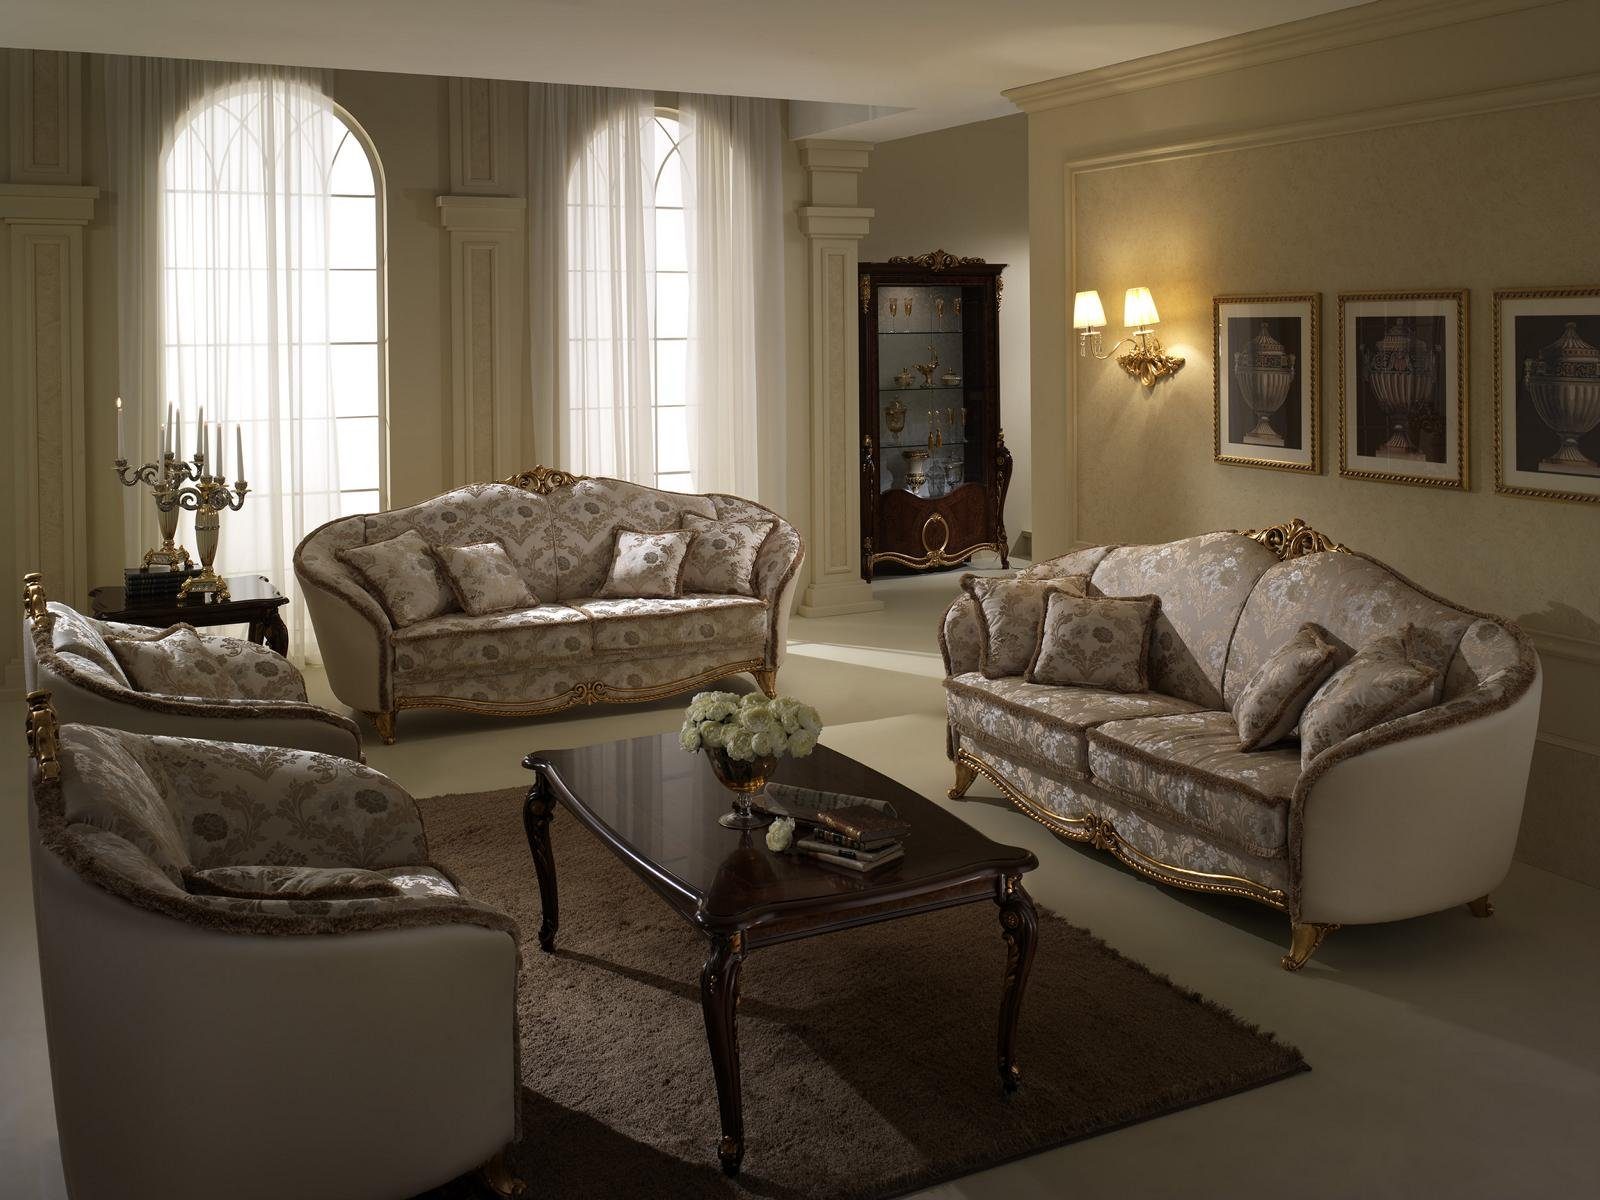 JVmoebel Wohnzimmer-Set, Luxus Klasse 3+1+1 Italienische Möbel Sofagarnitur Couch Sofa Neu arredoclassic™